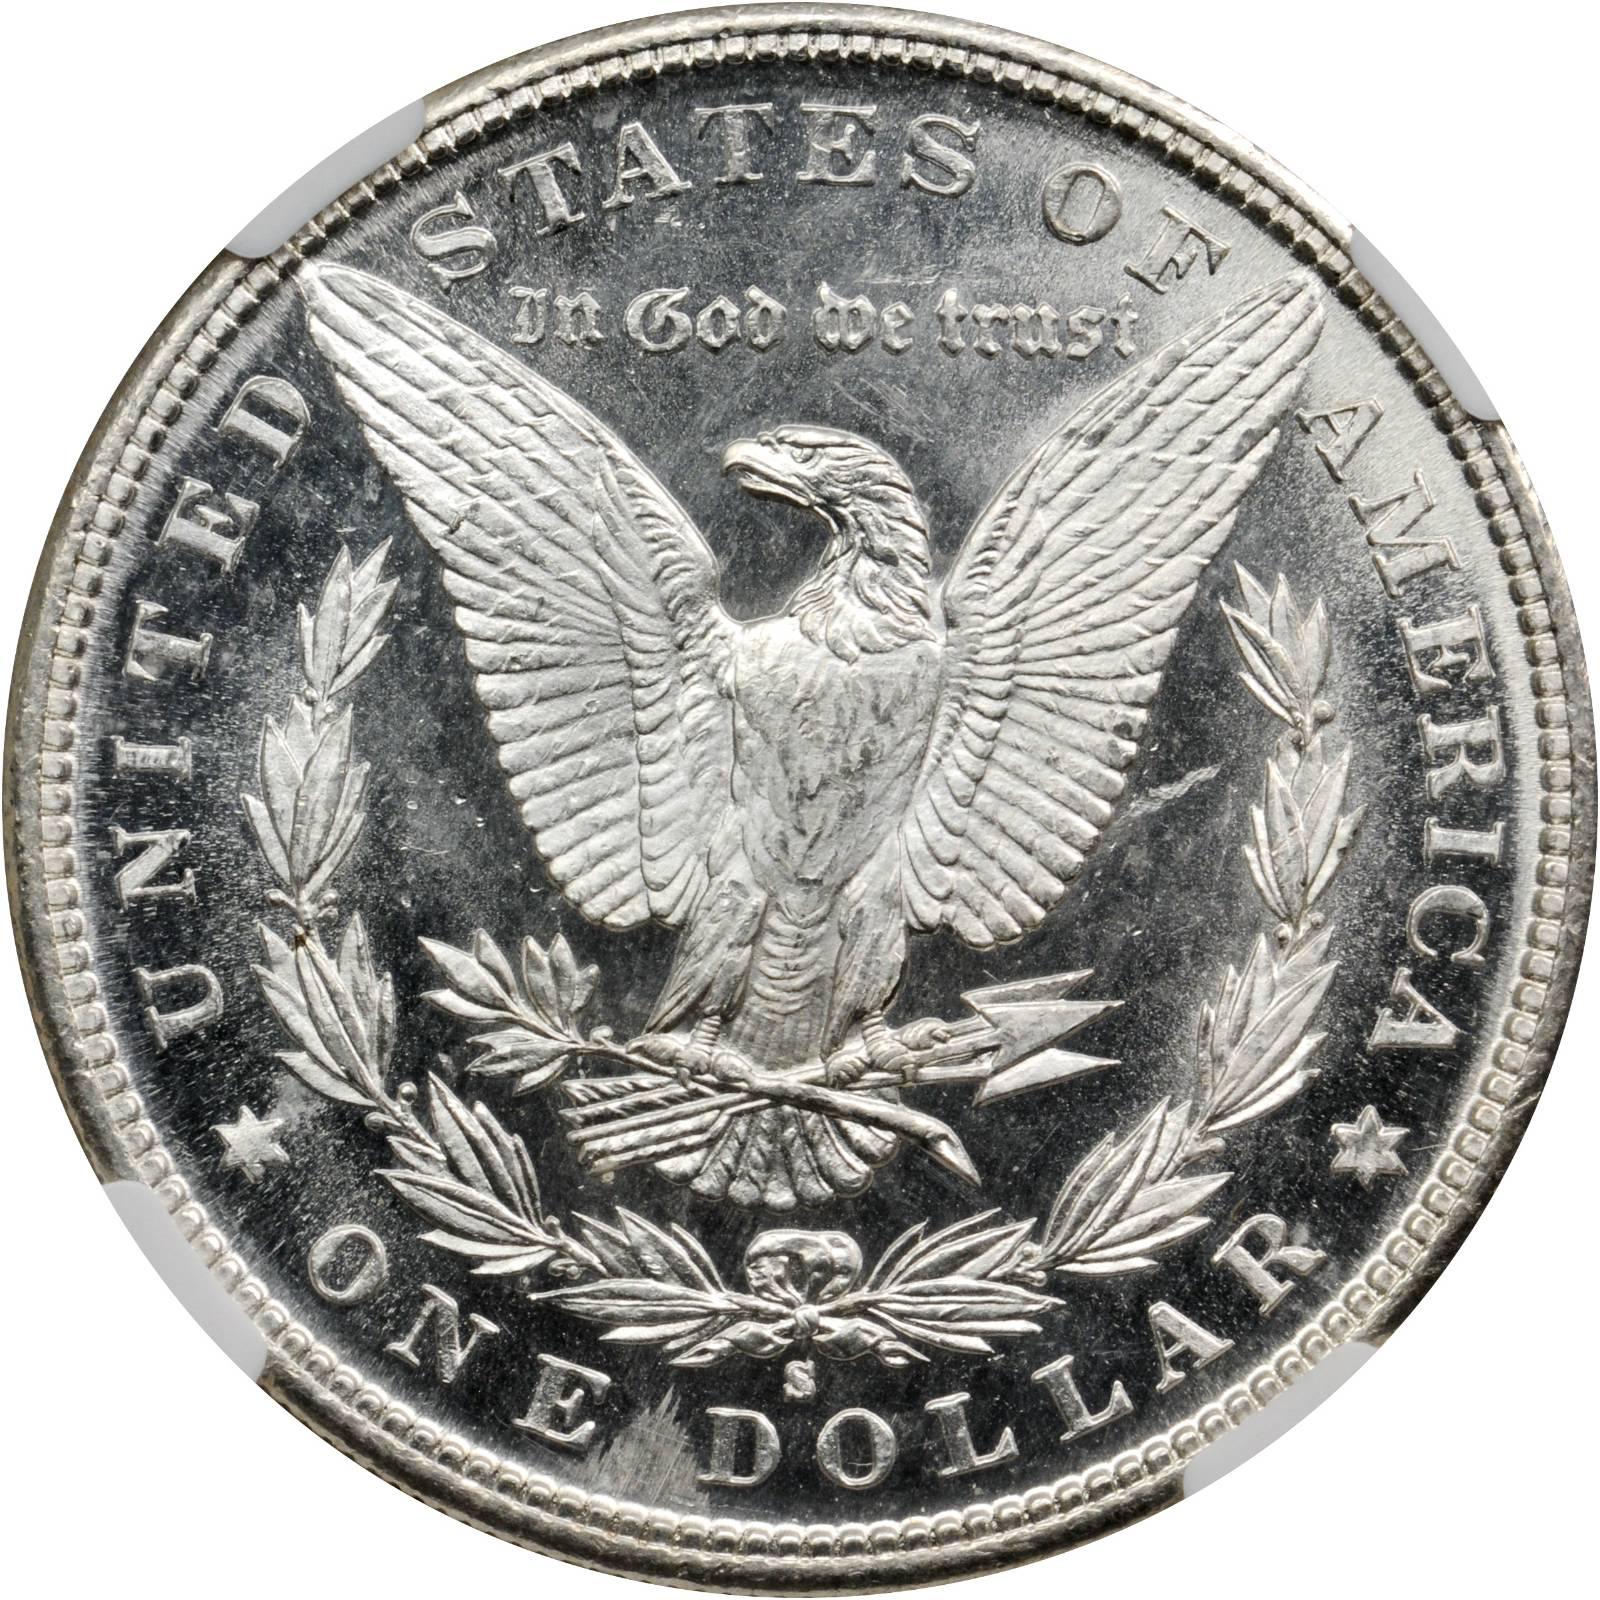 76 долларов в рублях. Серебряный доллар РДР 2. Серебряные доллары США 19 века. Серебряный доллар 200 лет США. Серебряный доллар из американских богов.